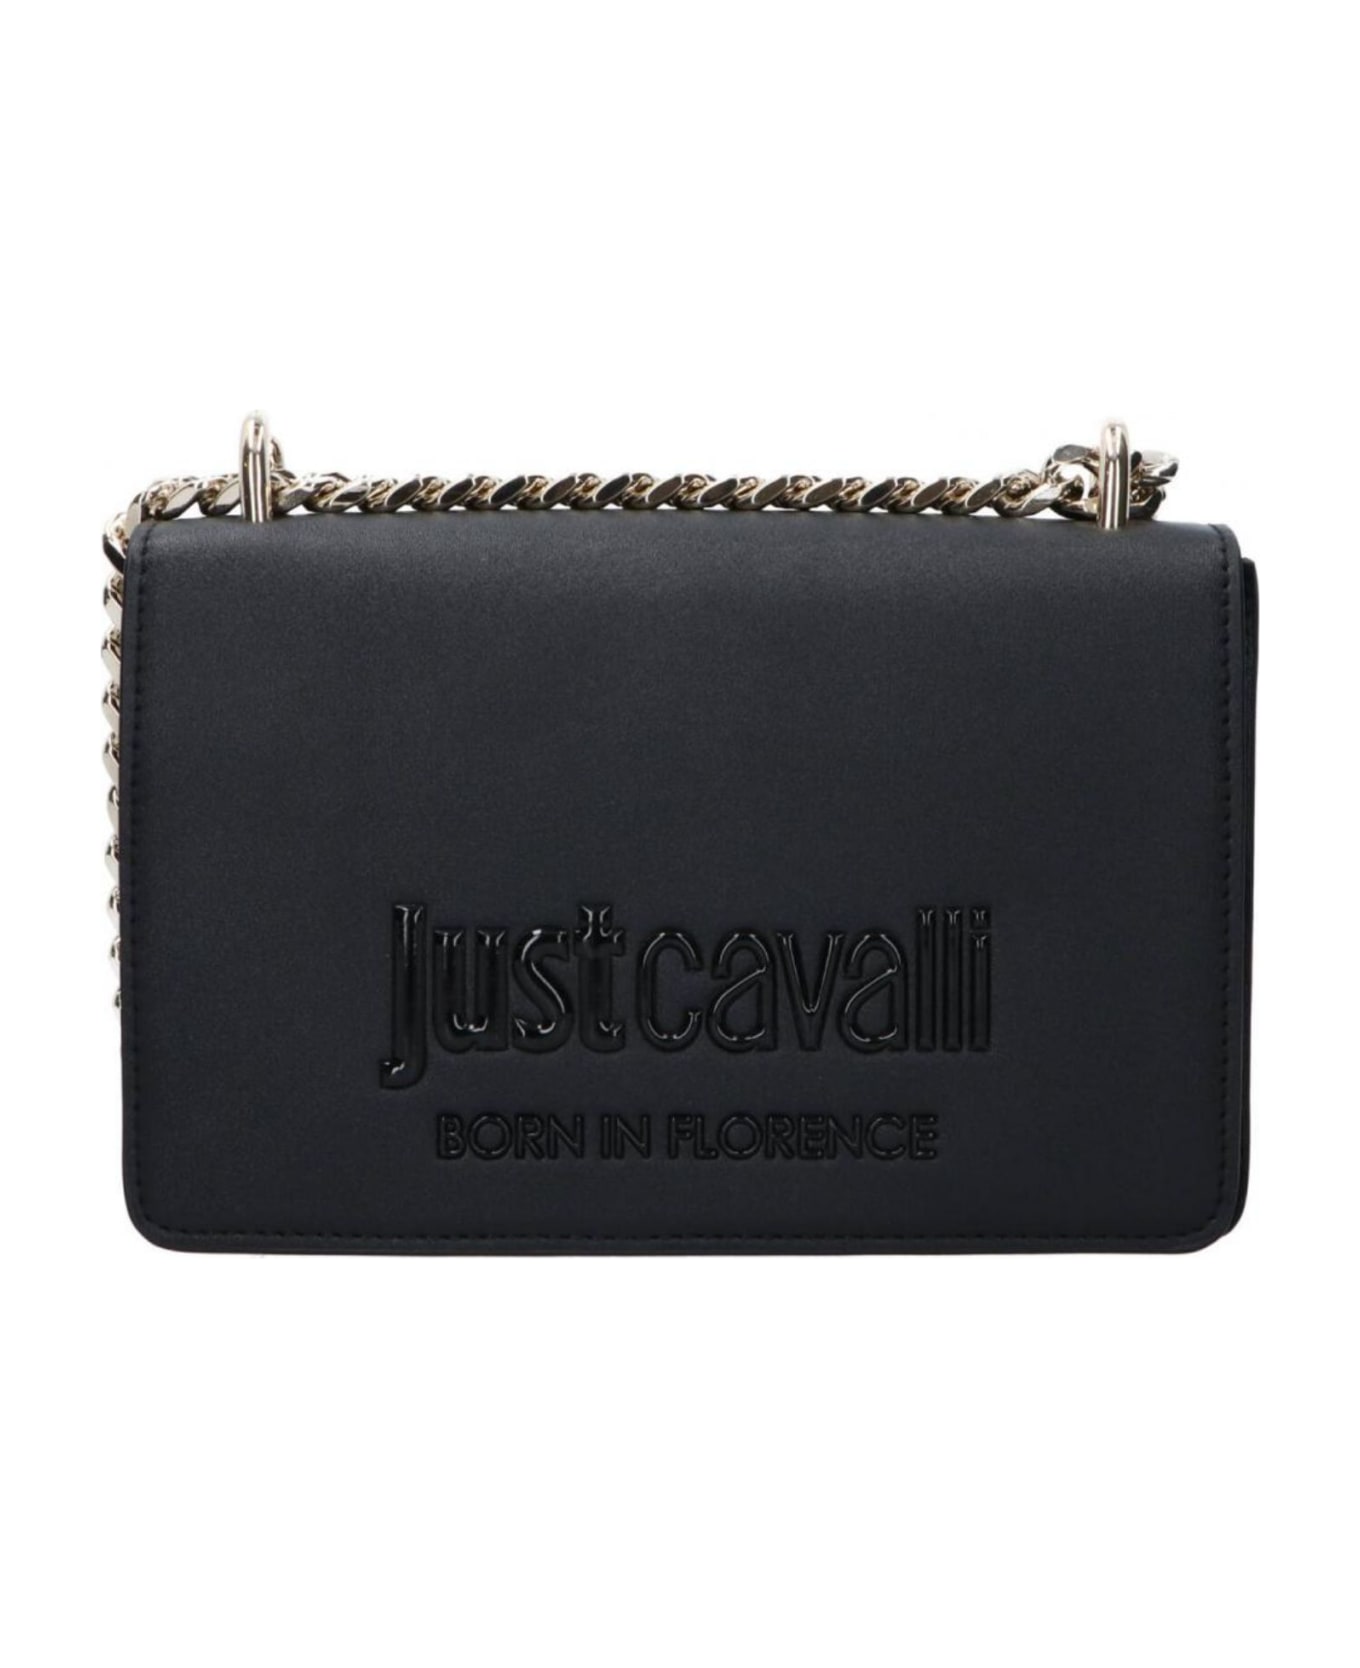 Just Cavalli Bag - Black ショルダーバッグ